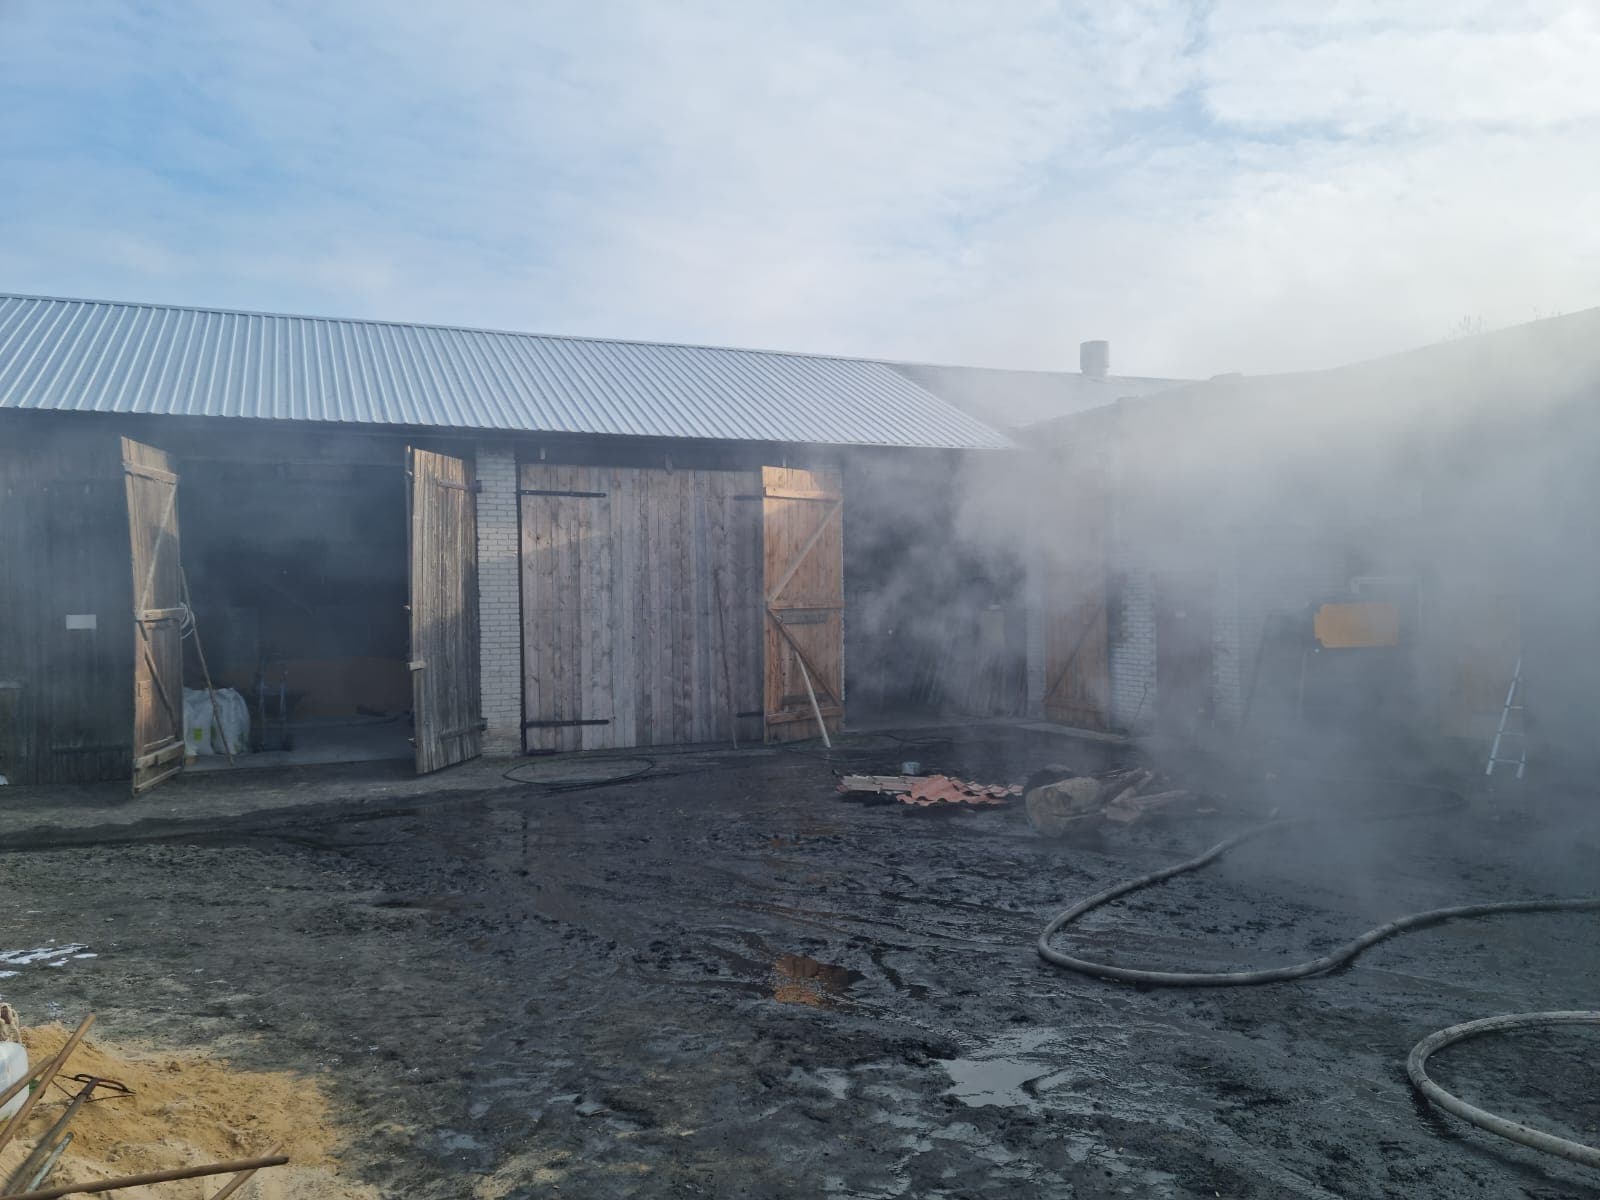 Garaż stanął w płomieniach, zagrożone były budynki gospodarcze. Udało się je uratować (zdjęcia)